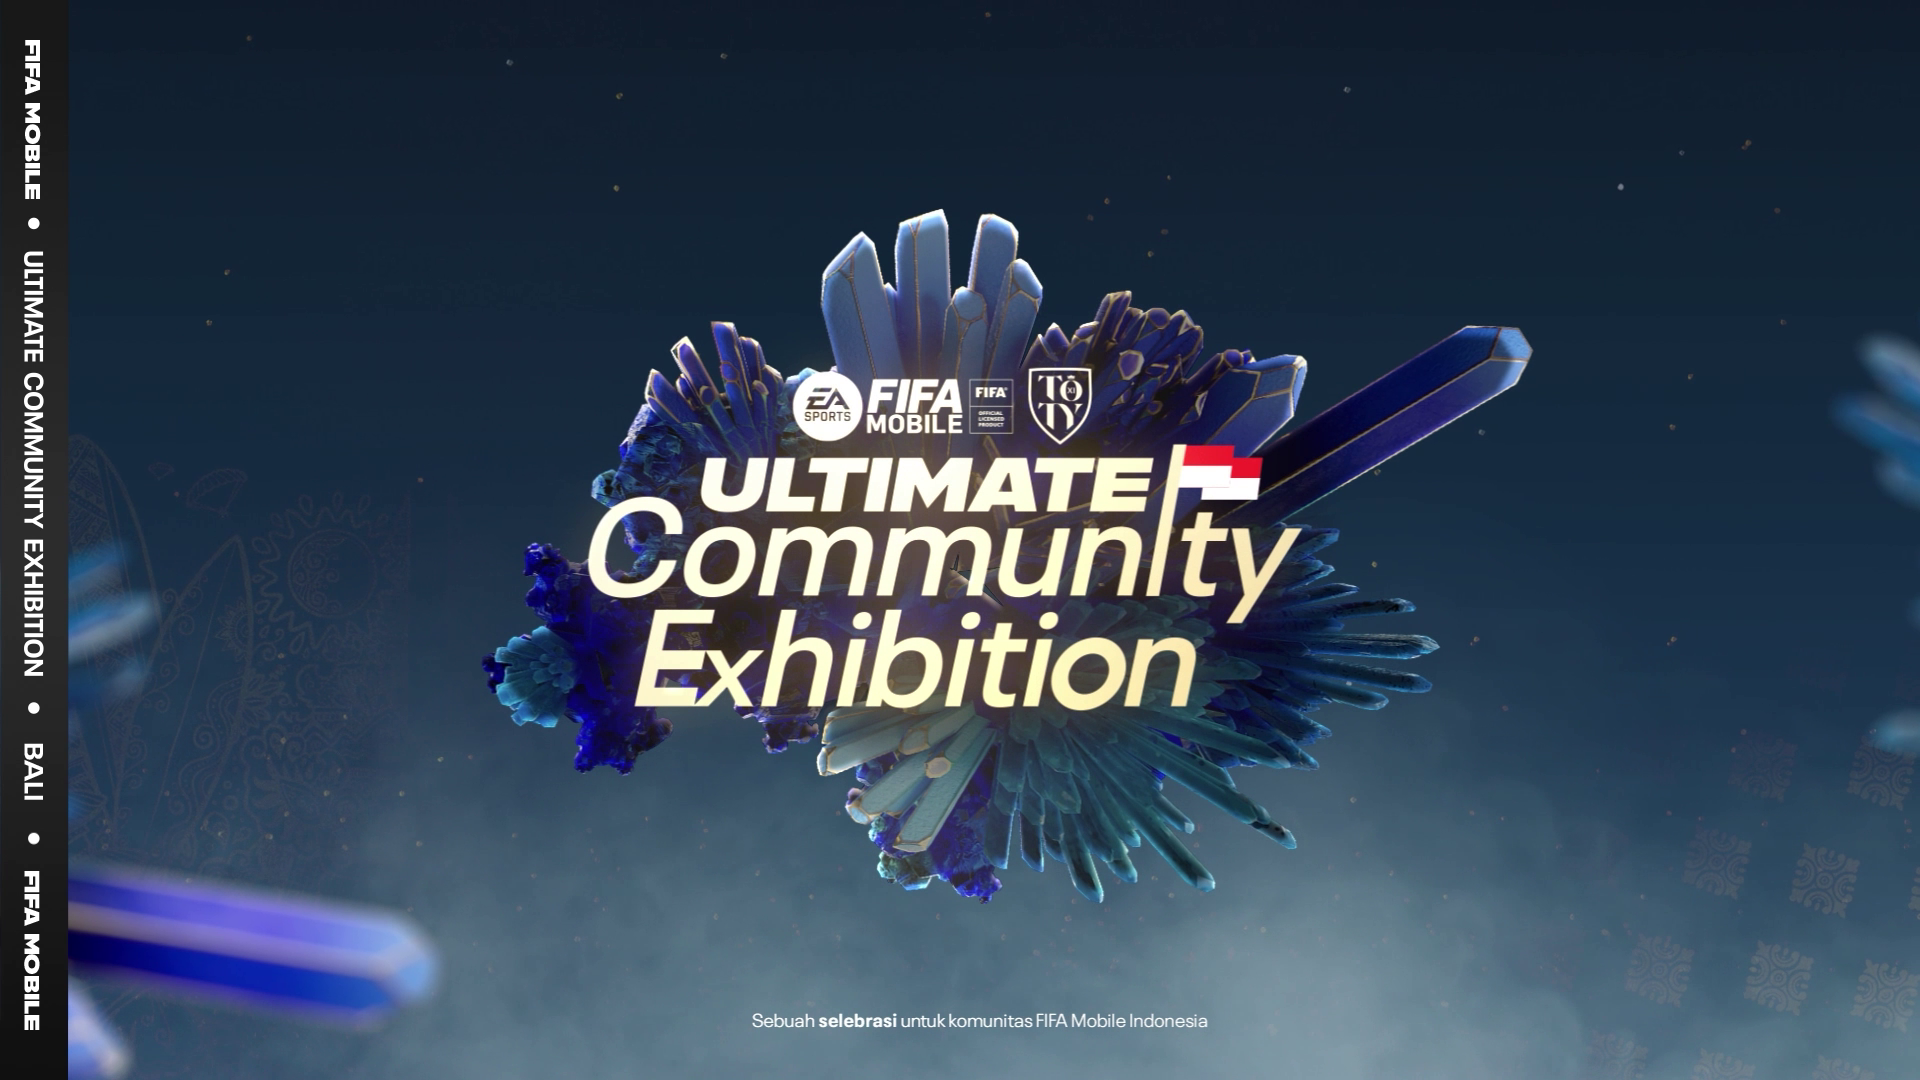 FIFA Mobile Ultimate Community Exhibition Siap Digelar di Bali